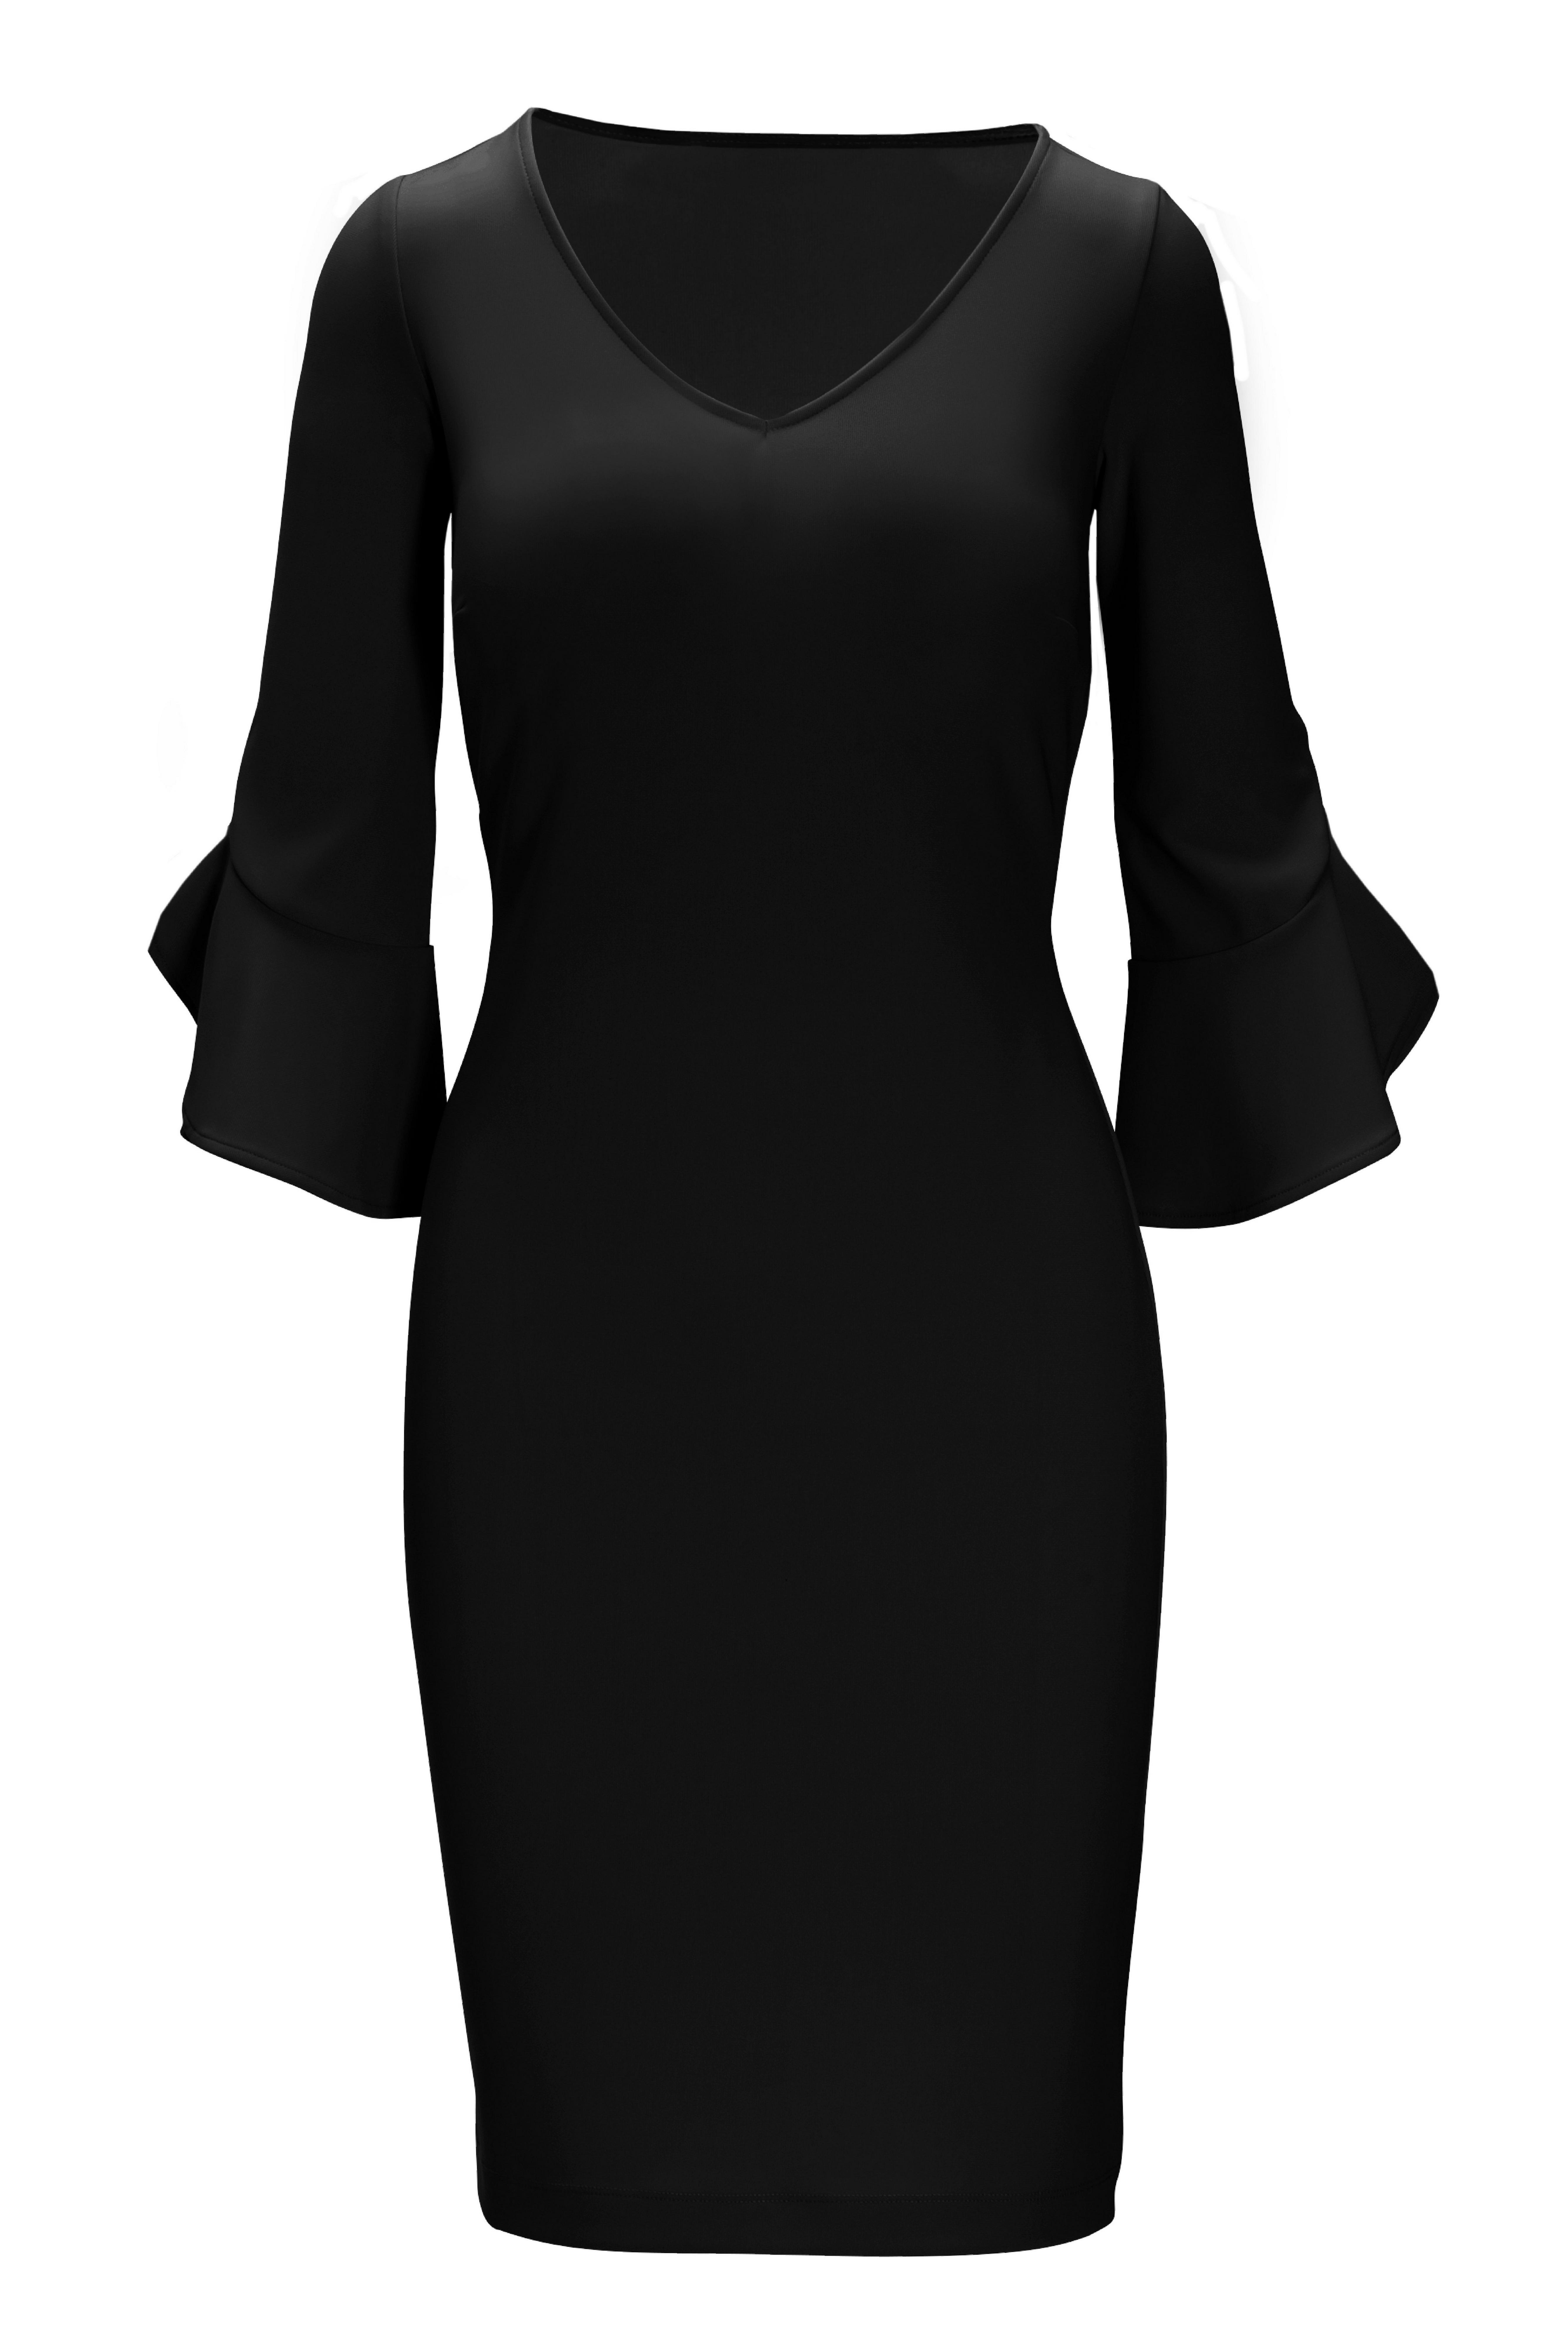 black v neck sheath dress